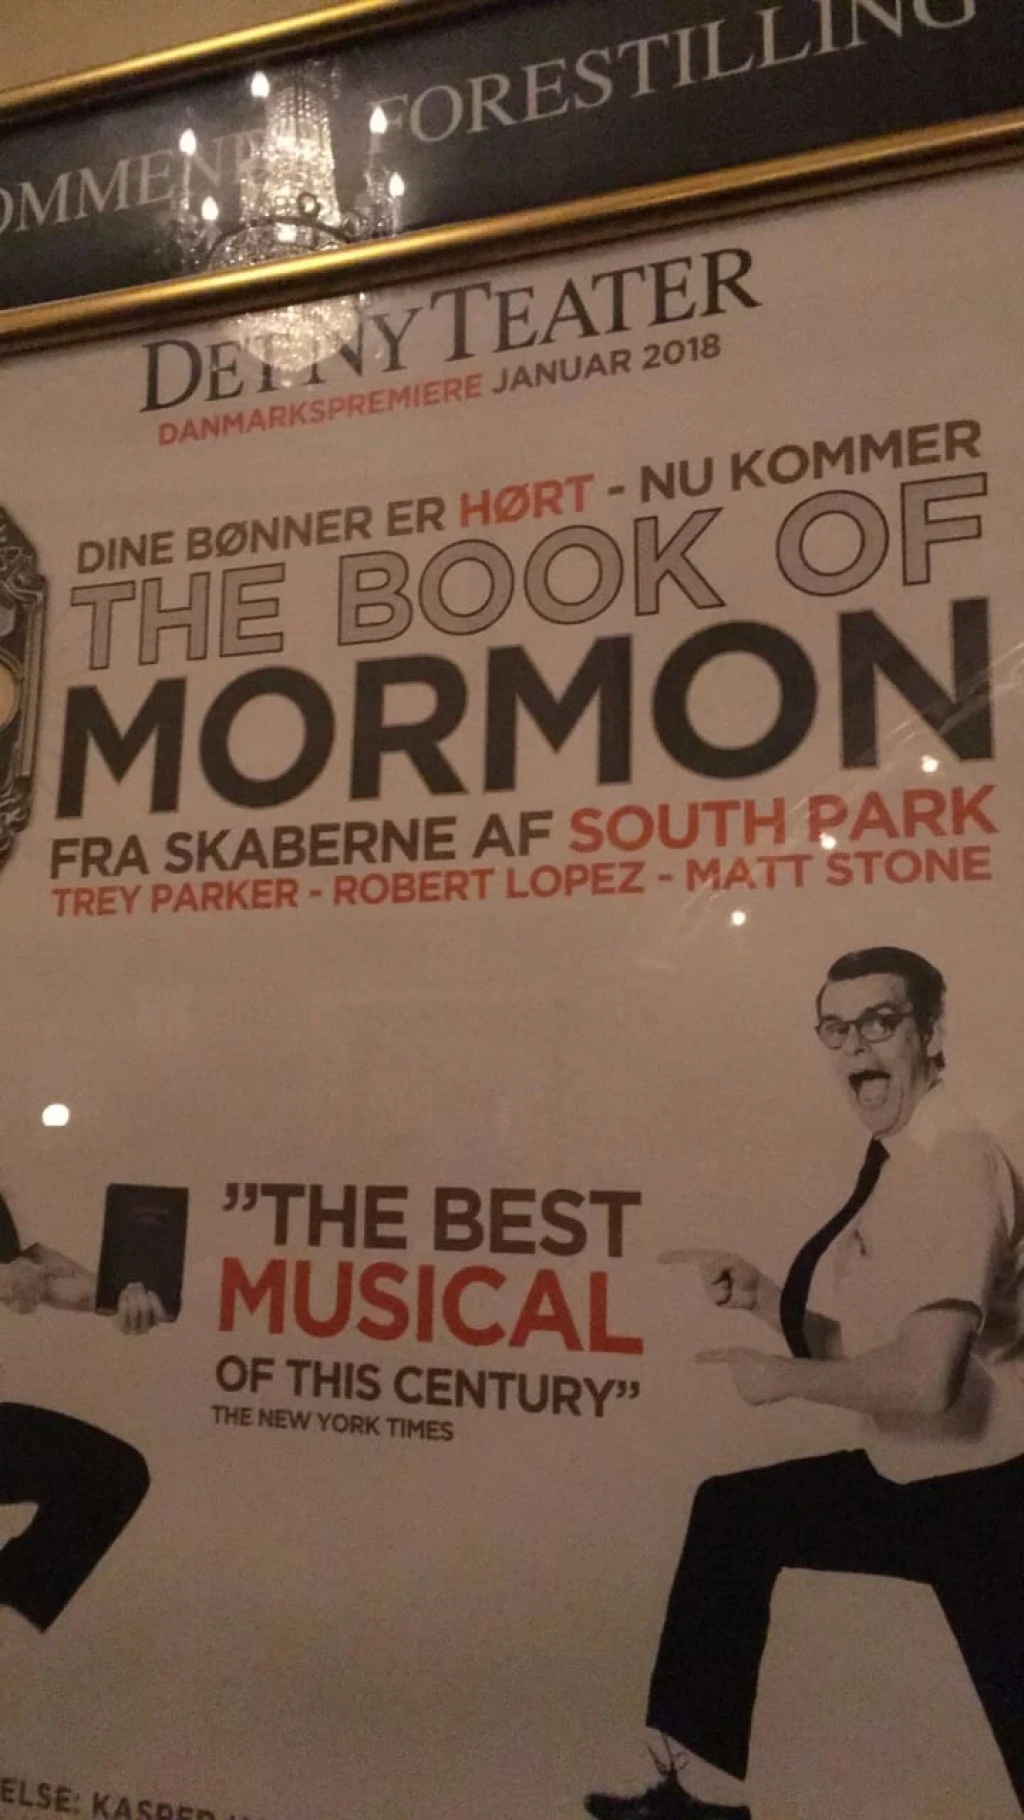 The Book of Mormon på Det Ny Teater - Fremragende, fantastisk fræk (anmeldelse)